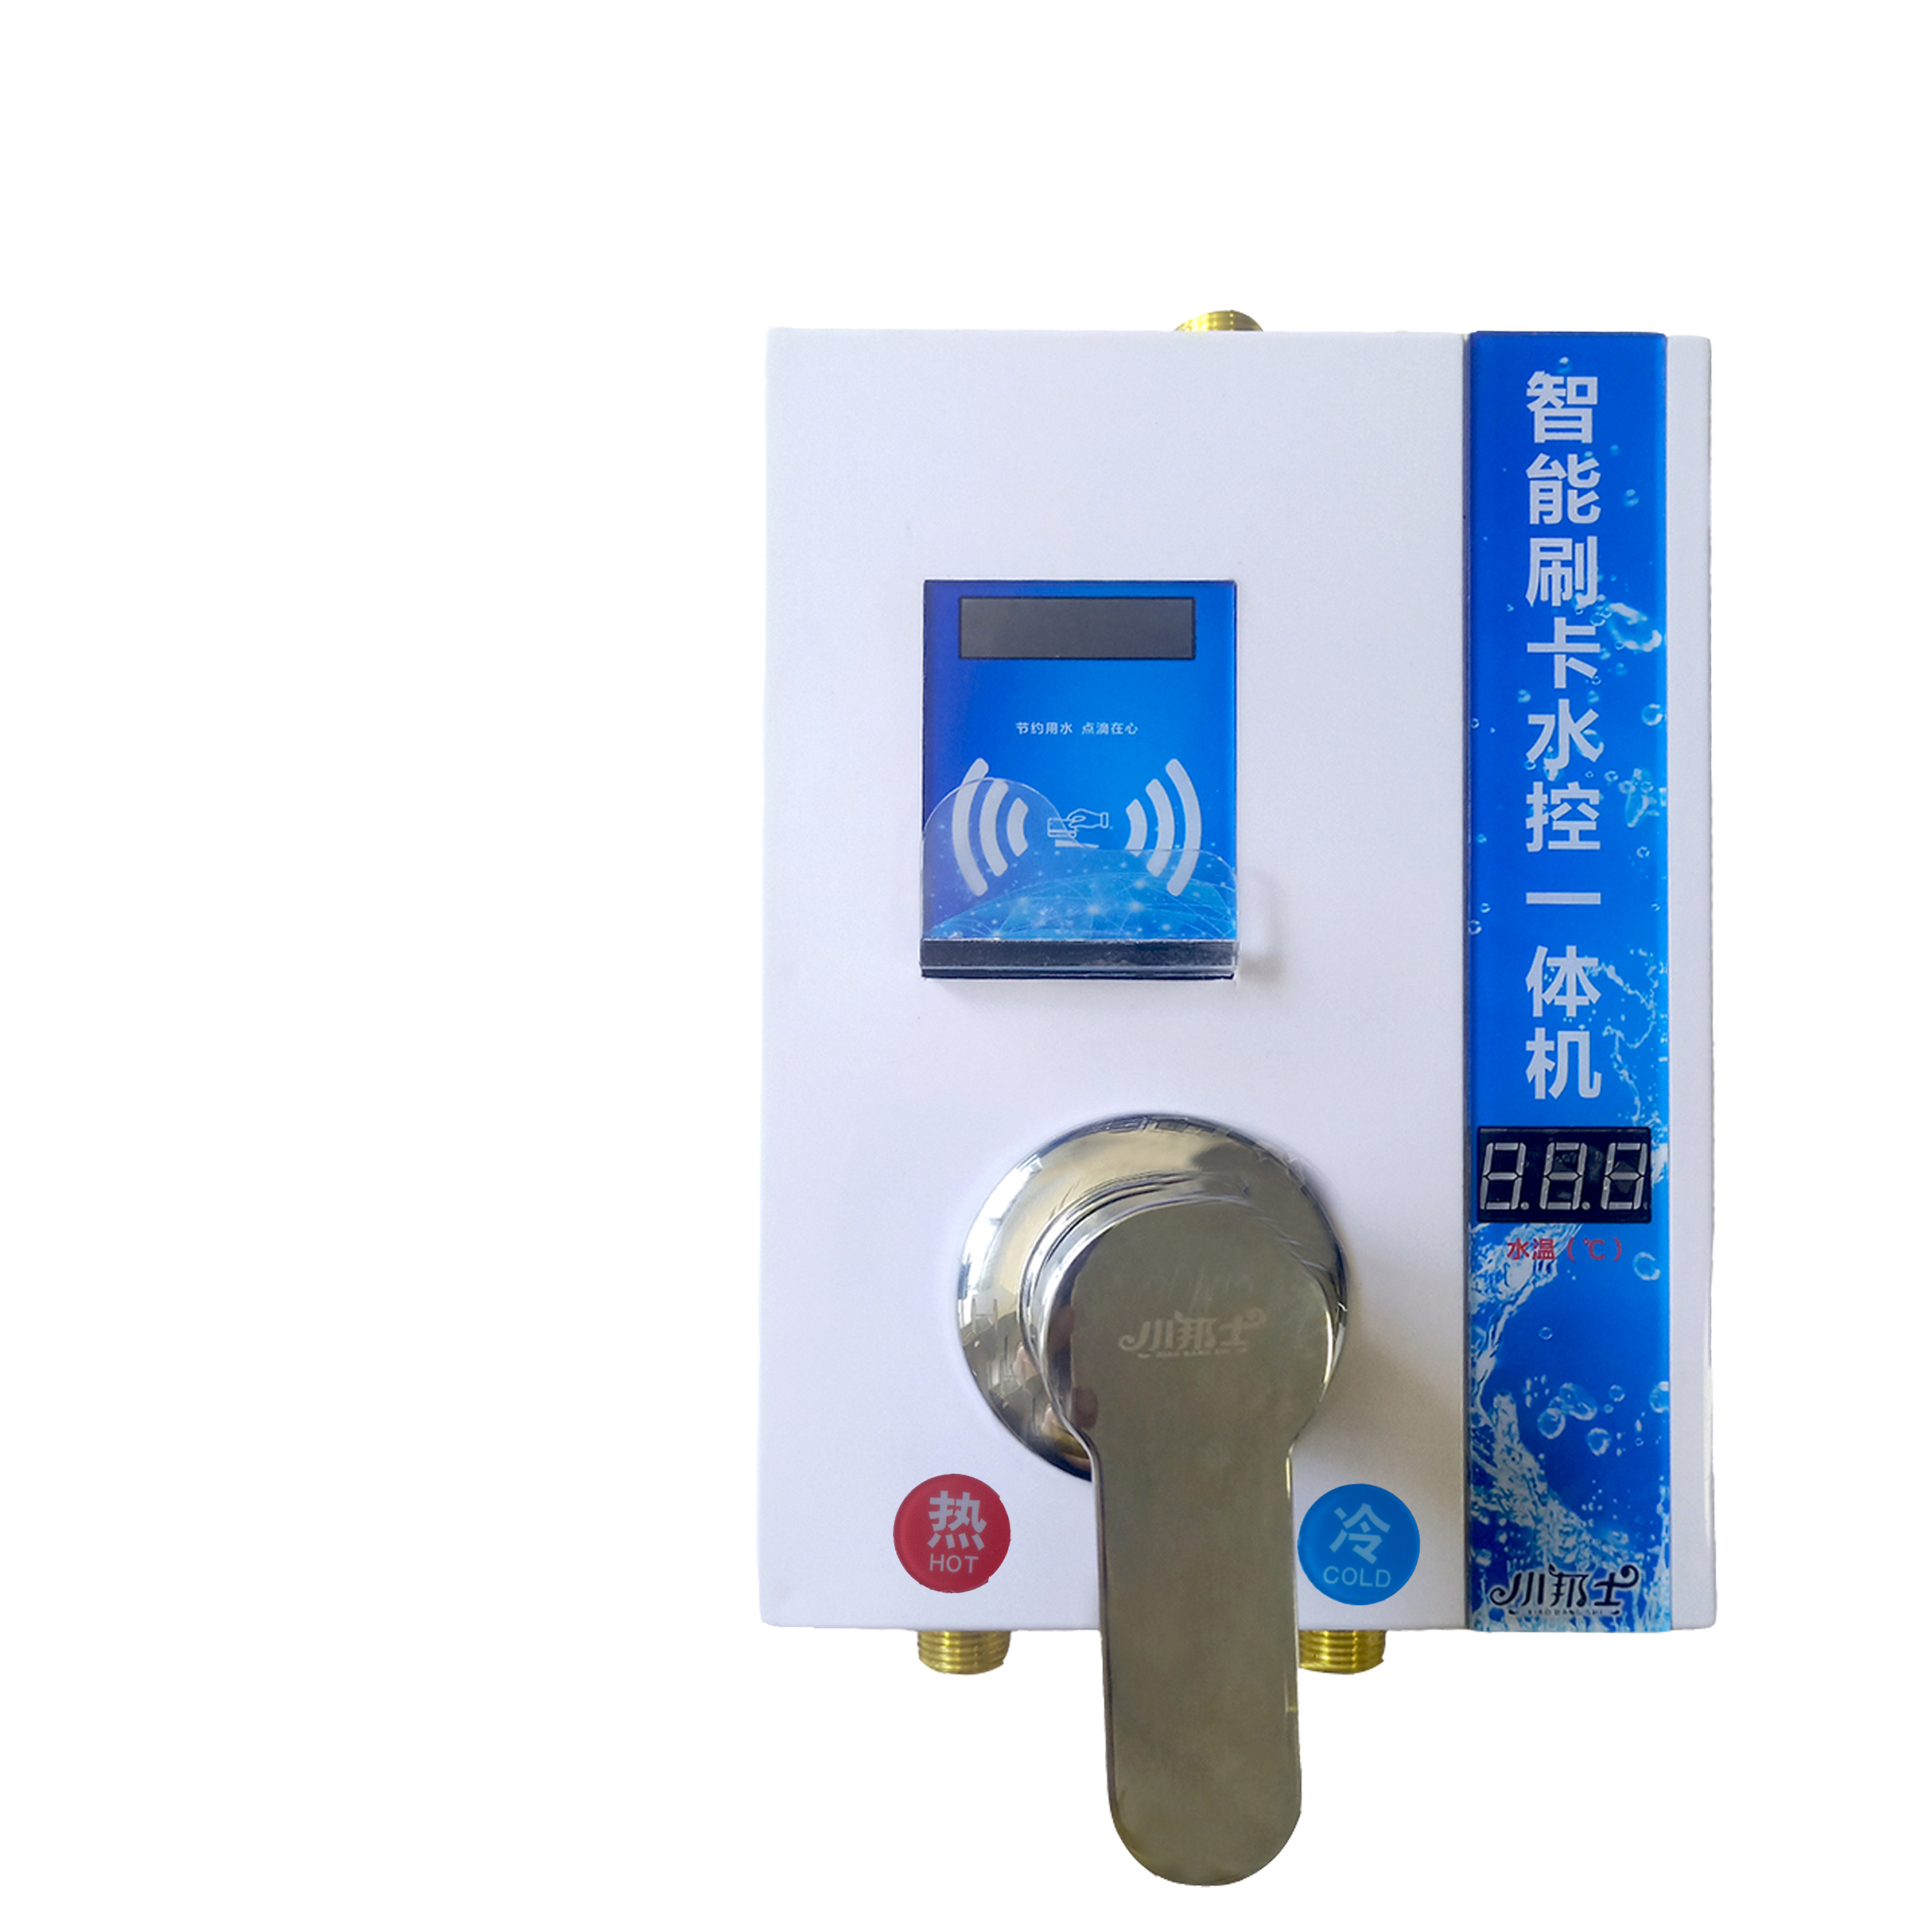 小邦士IC卡控水器系统JS-YT01  浴室刷卡节约用水专用图片